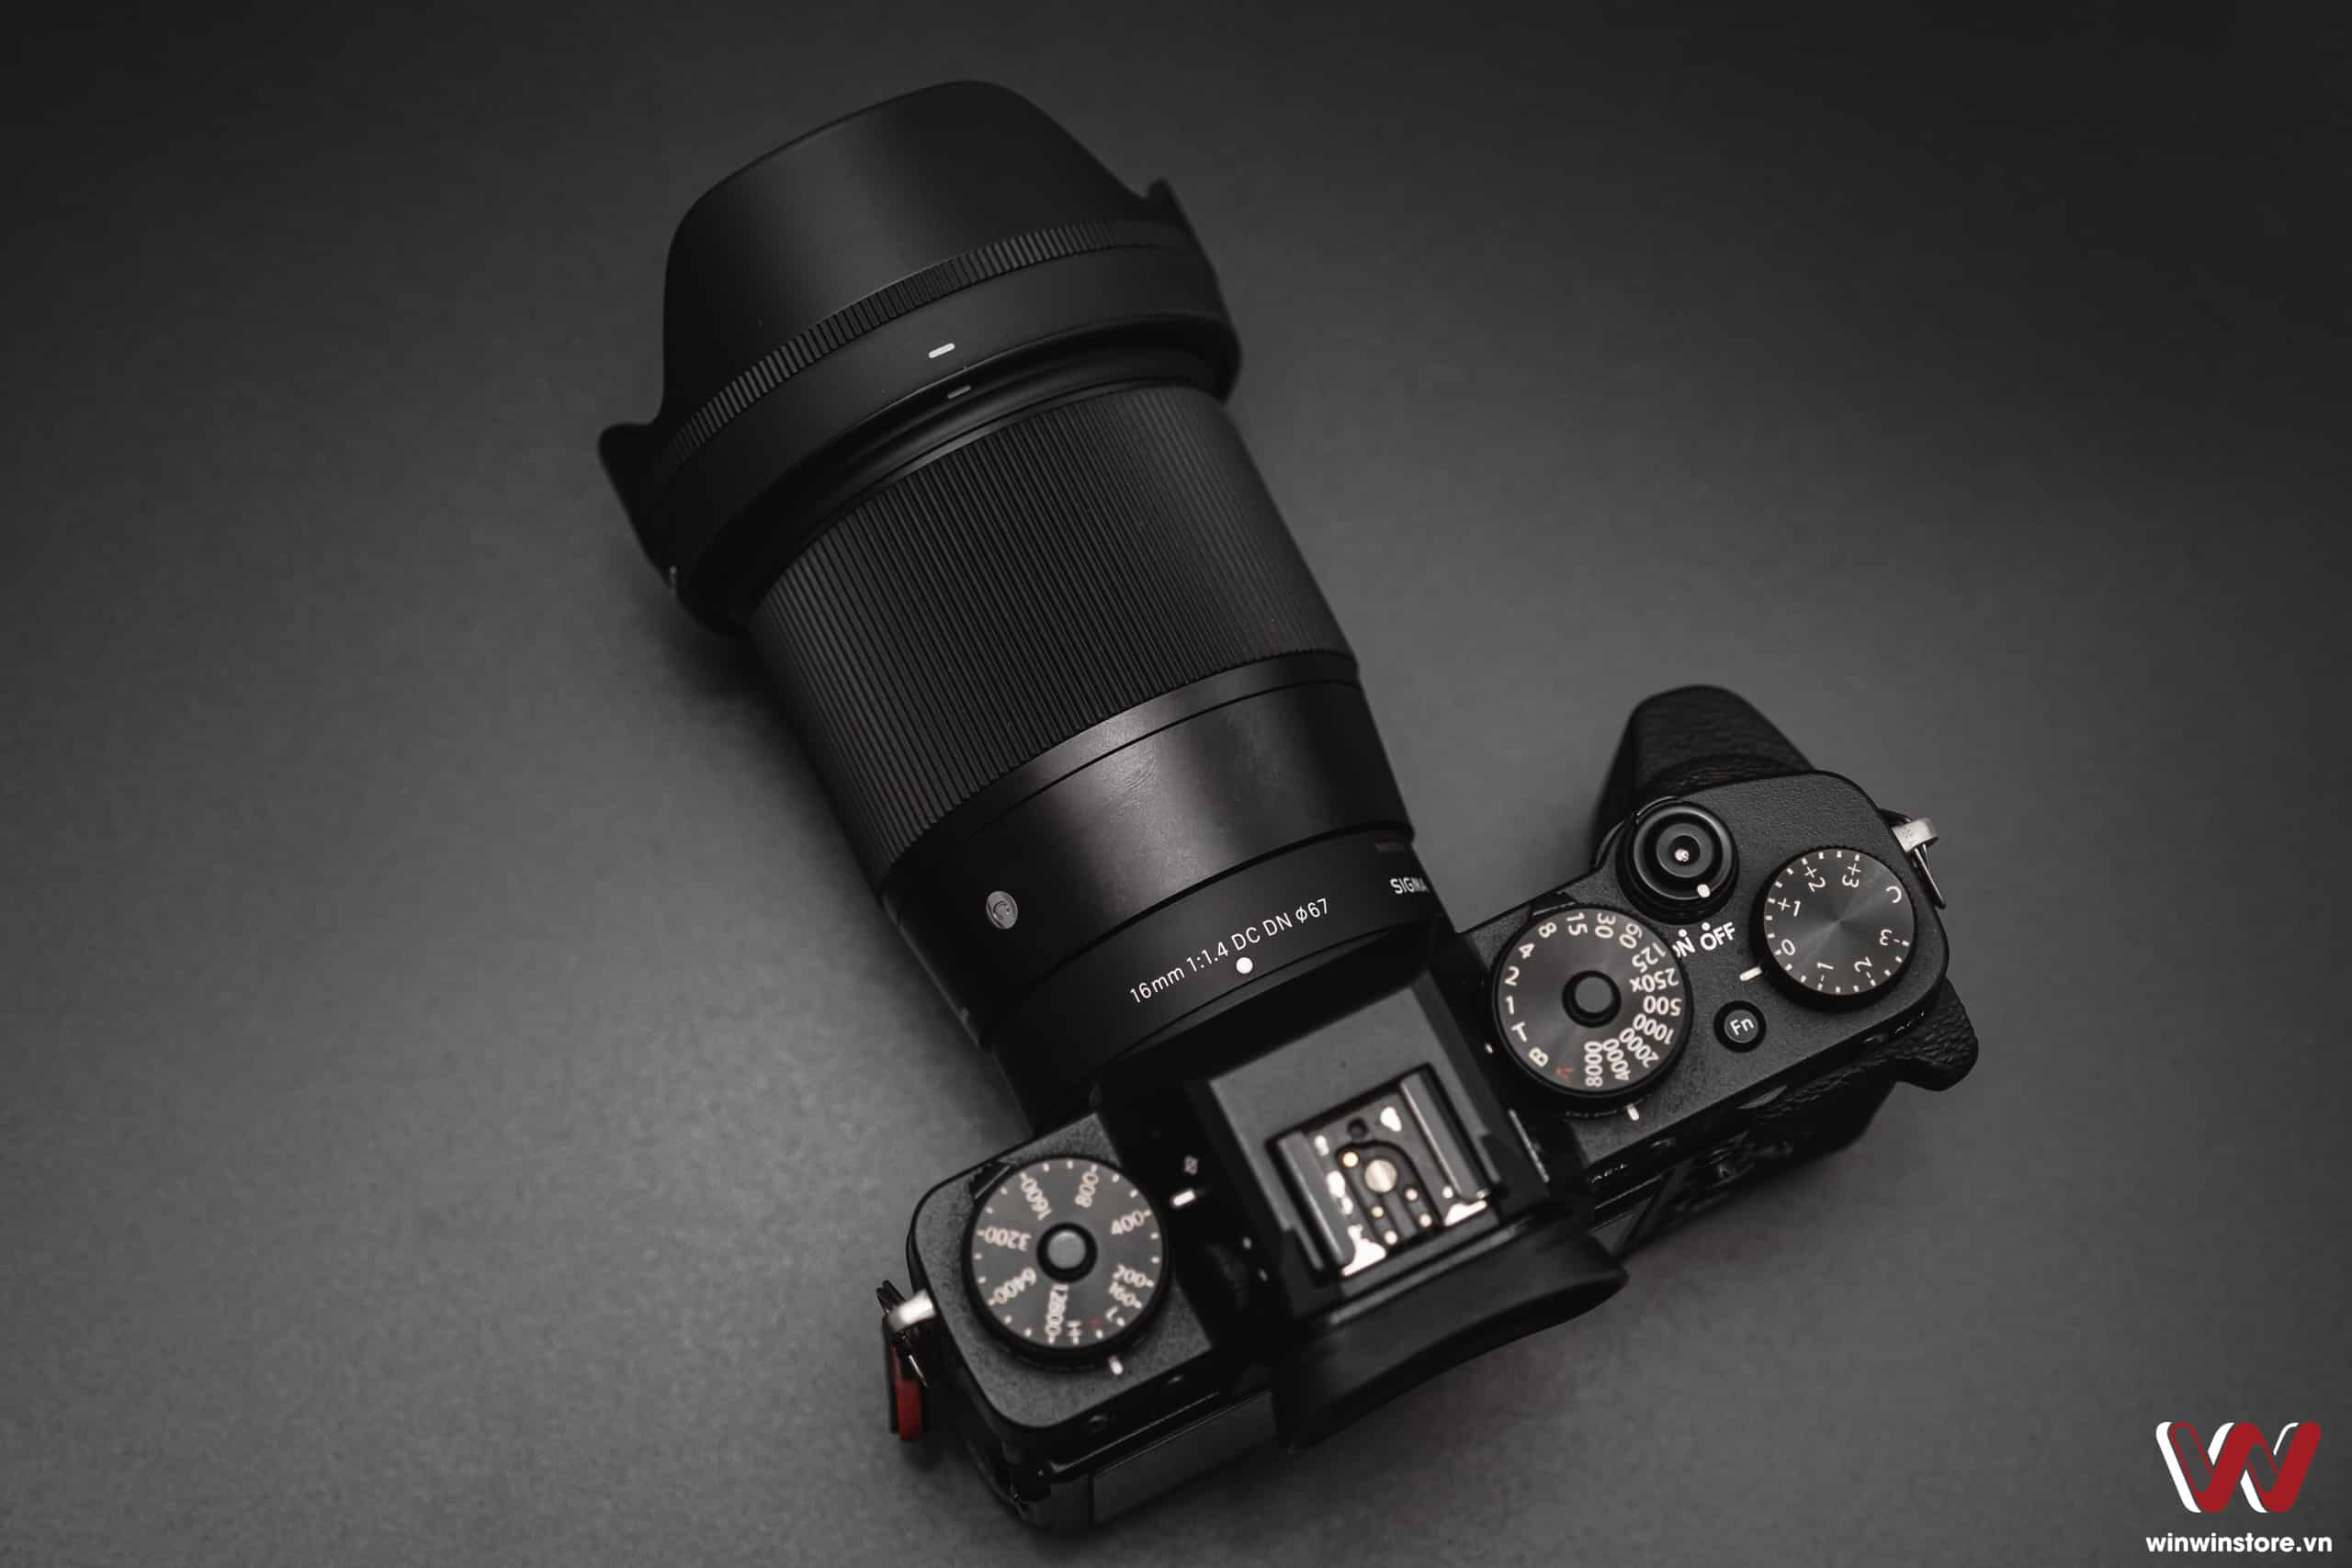 Trên tay ống kính Sigma 16mm F1.4 DC DN Contemporary cho Fujifilm X: Hoàn thiện tốt, quang học tốt, nhiều thứ hứa hẹn trong tương lai